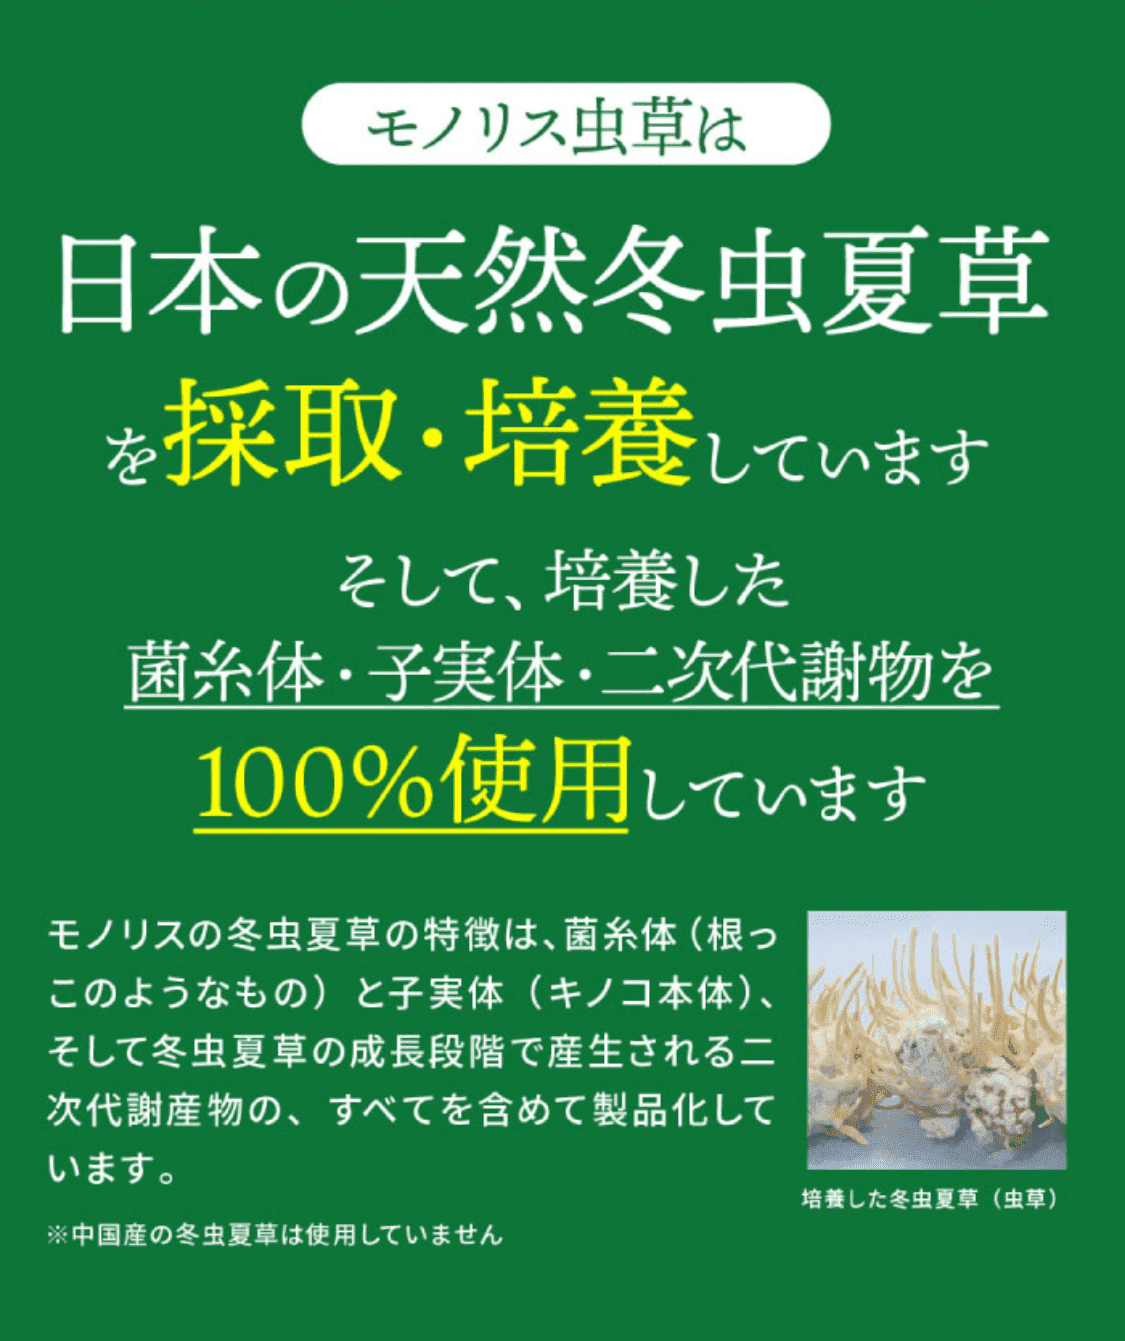 モノリス虫草は日本の天然冬虫夏草を採取・培養しています そして、培養した菌糸体・子実体・二次代謝物を100%使用しています